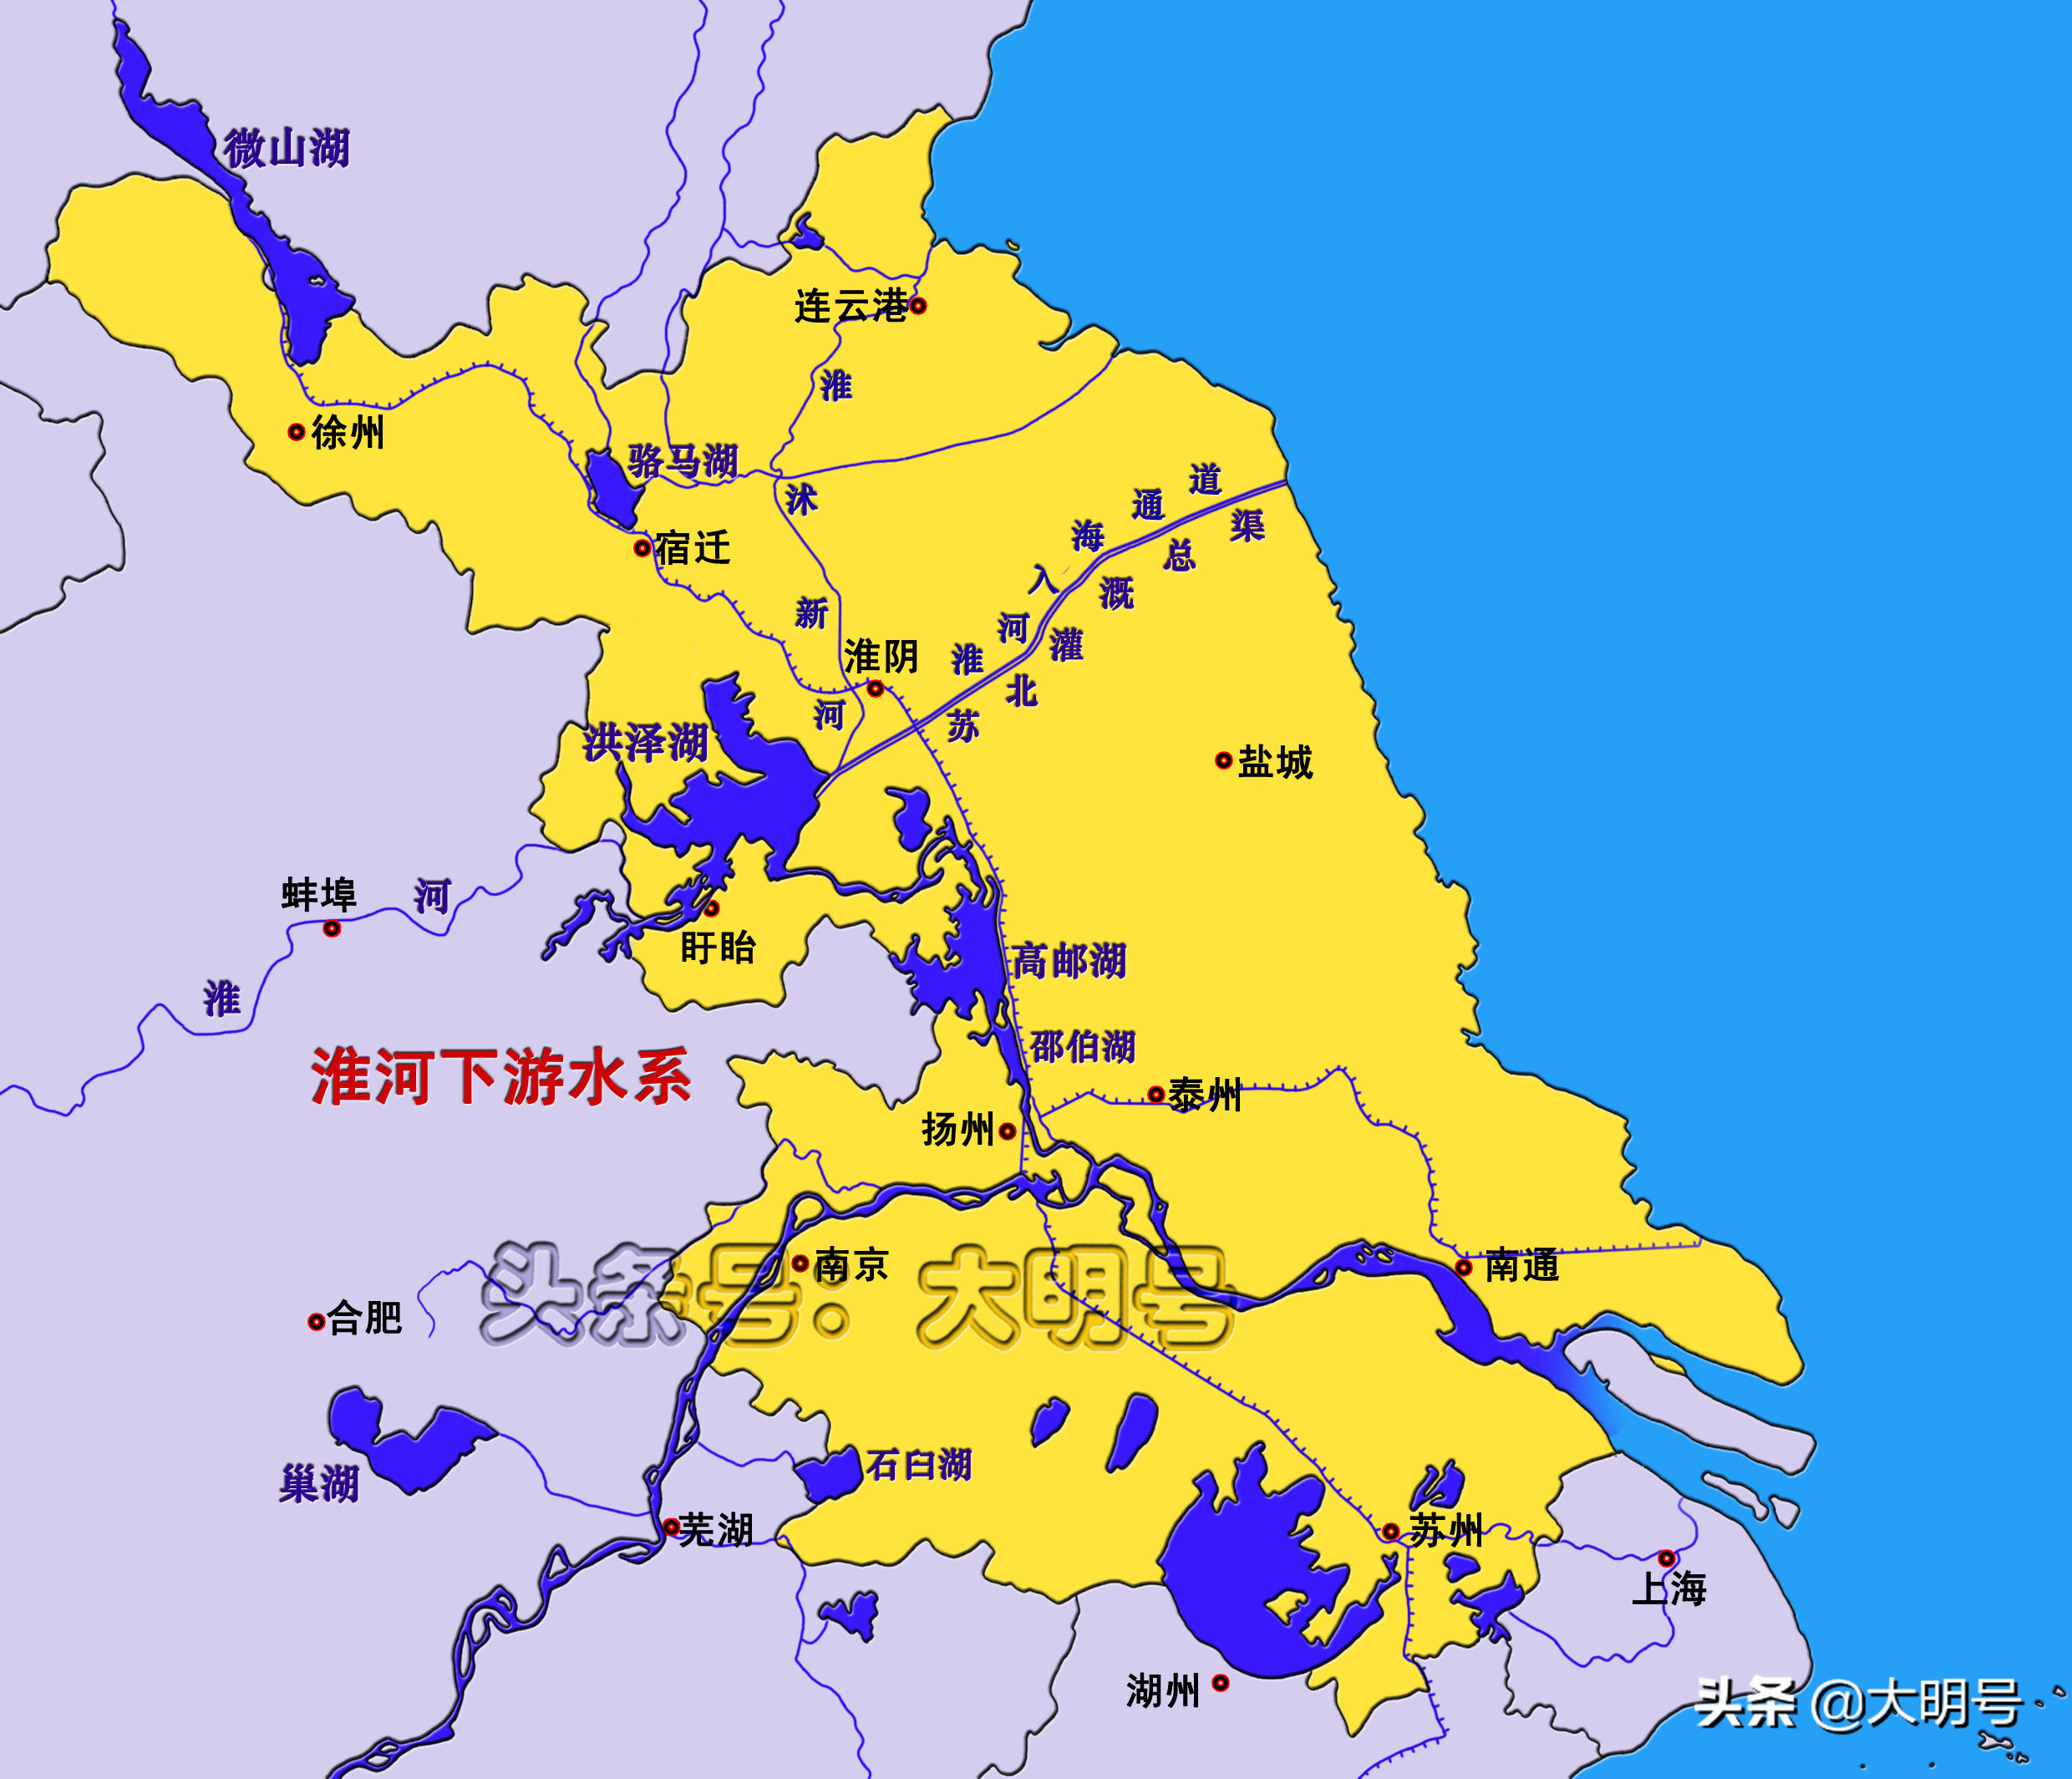 70%以上的淮河水通过长江入海